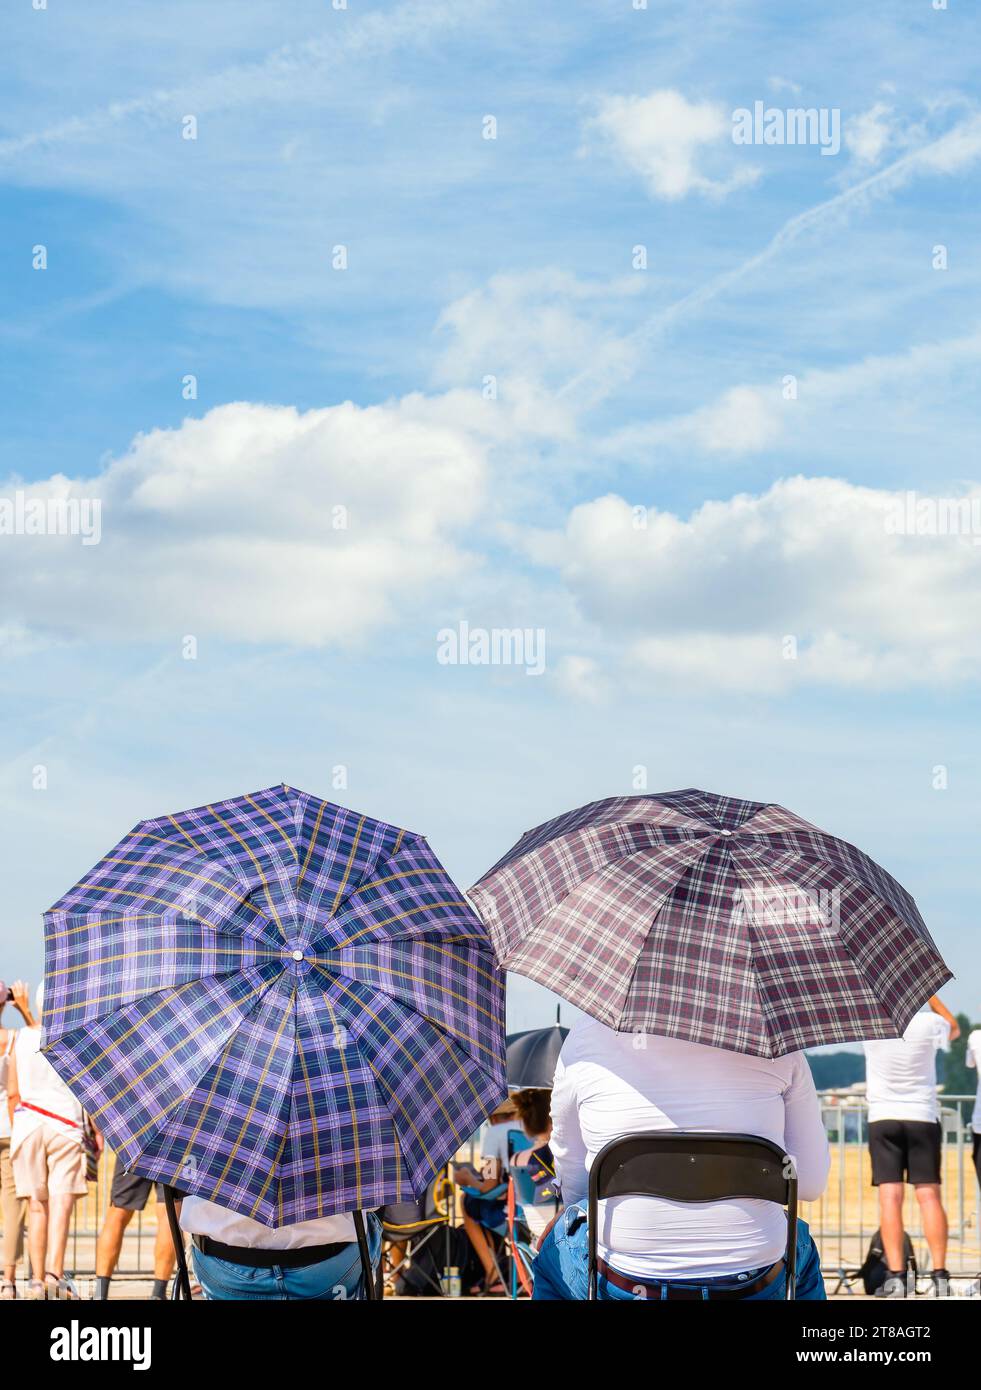 Deux hommes avec des parasols assis sur des chaises au soleil. Concept de chaleur estivale. Banque D'Images